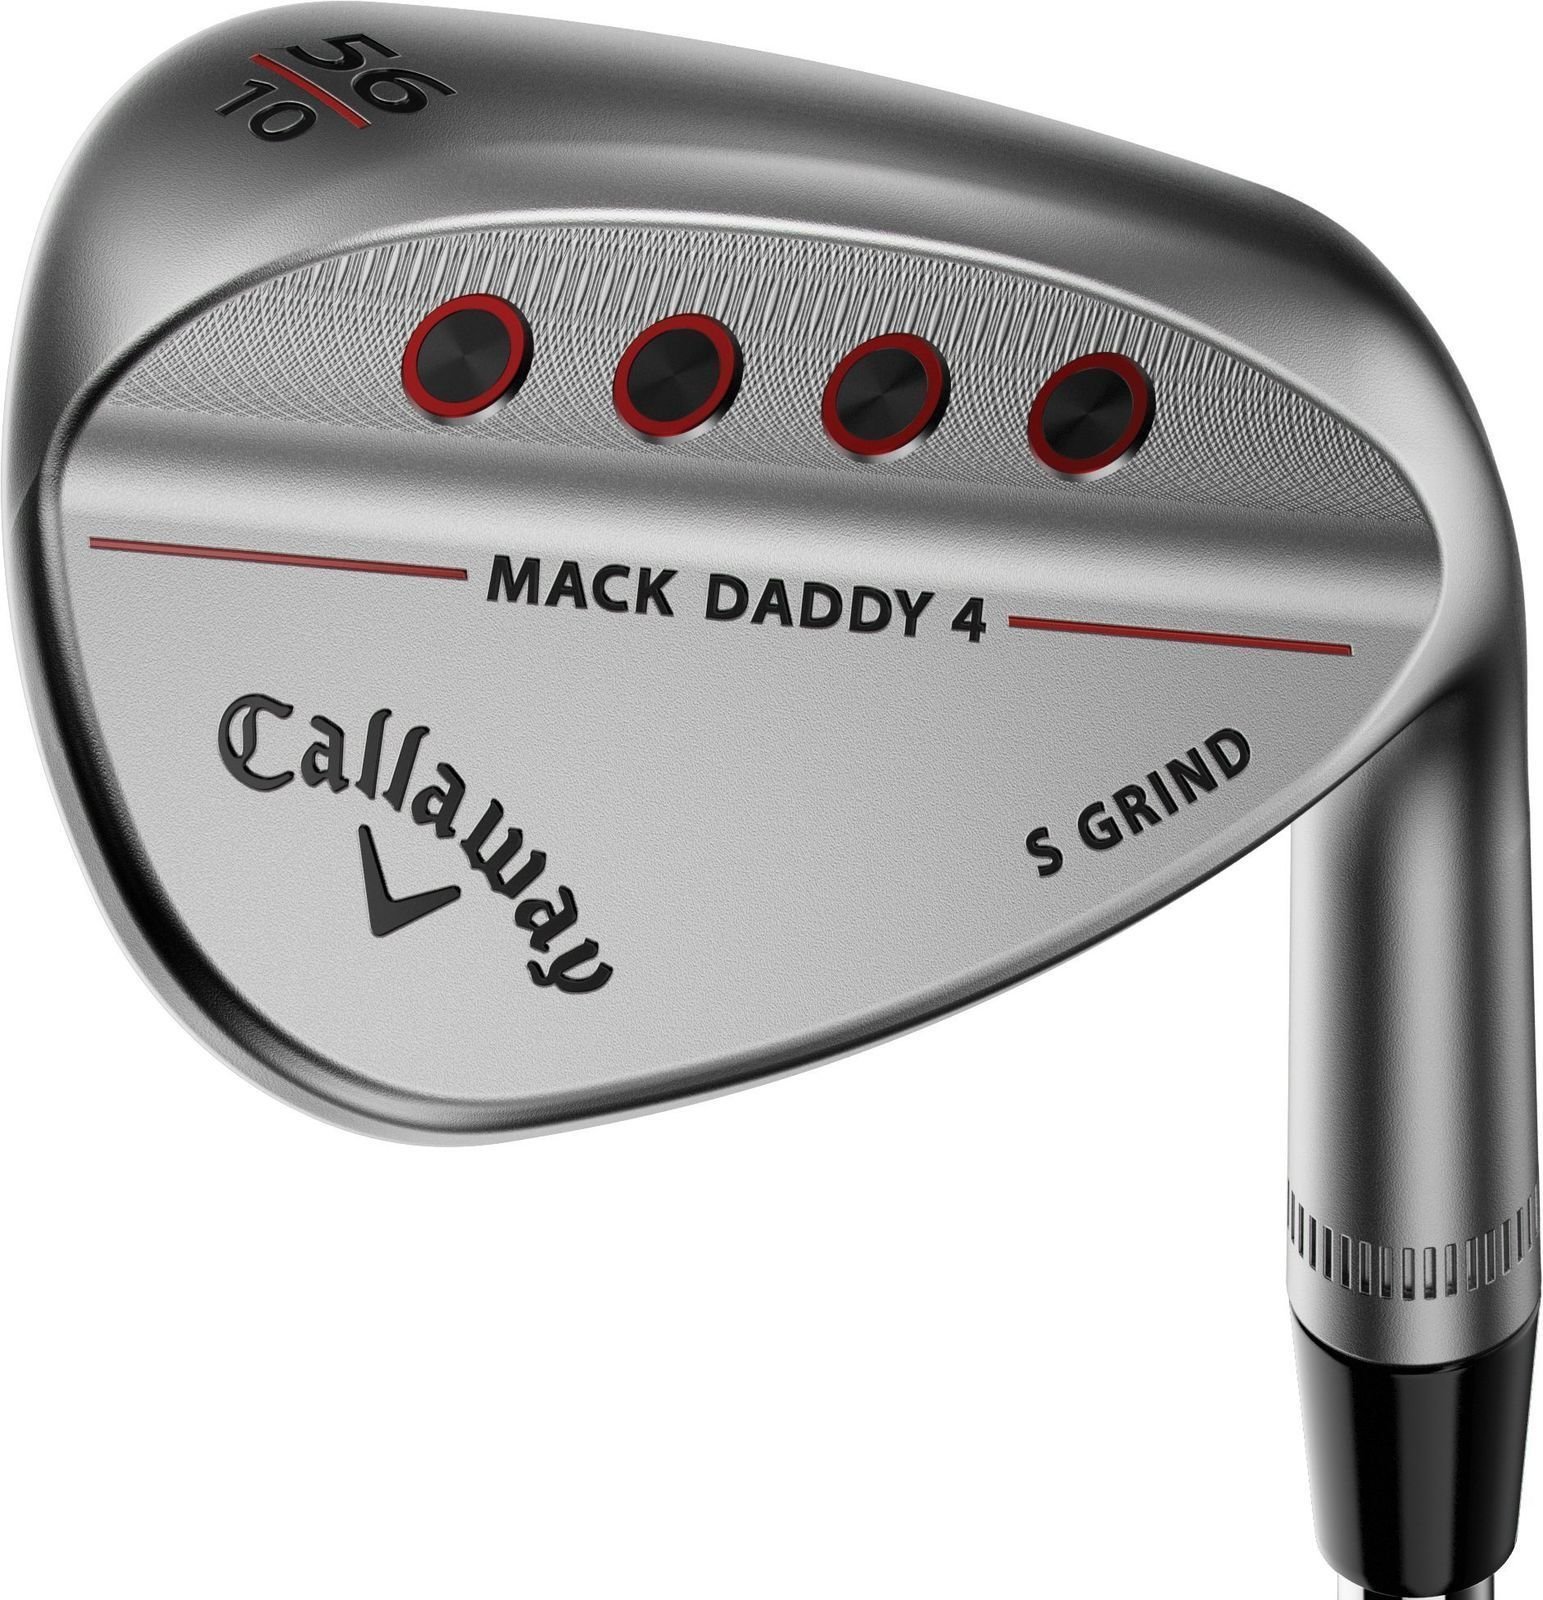 Λέσχες γκολφ - wedge Callaway Mack Daddy 4 Chrome Wedge 60-12 X-Grind Right Hand